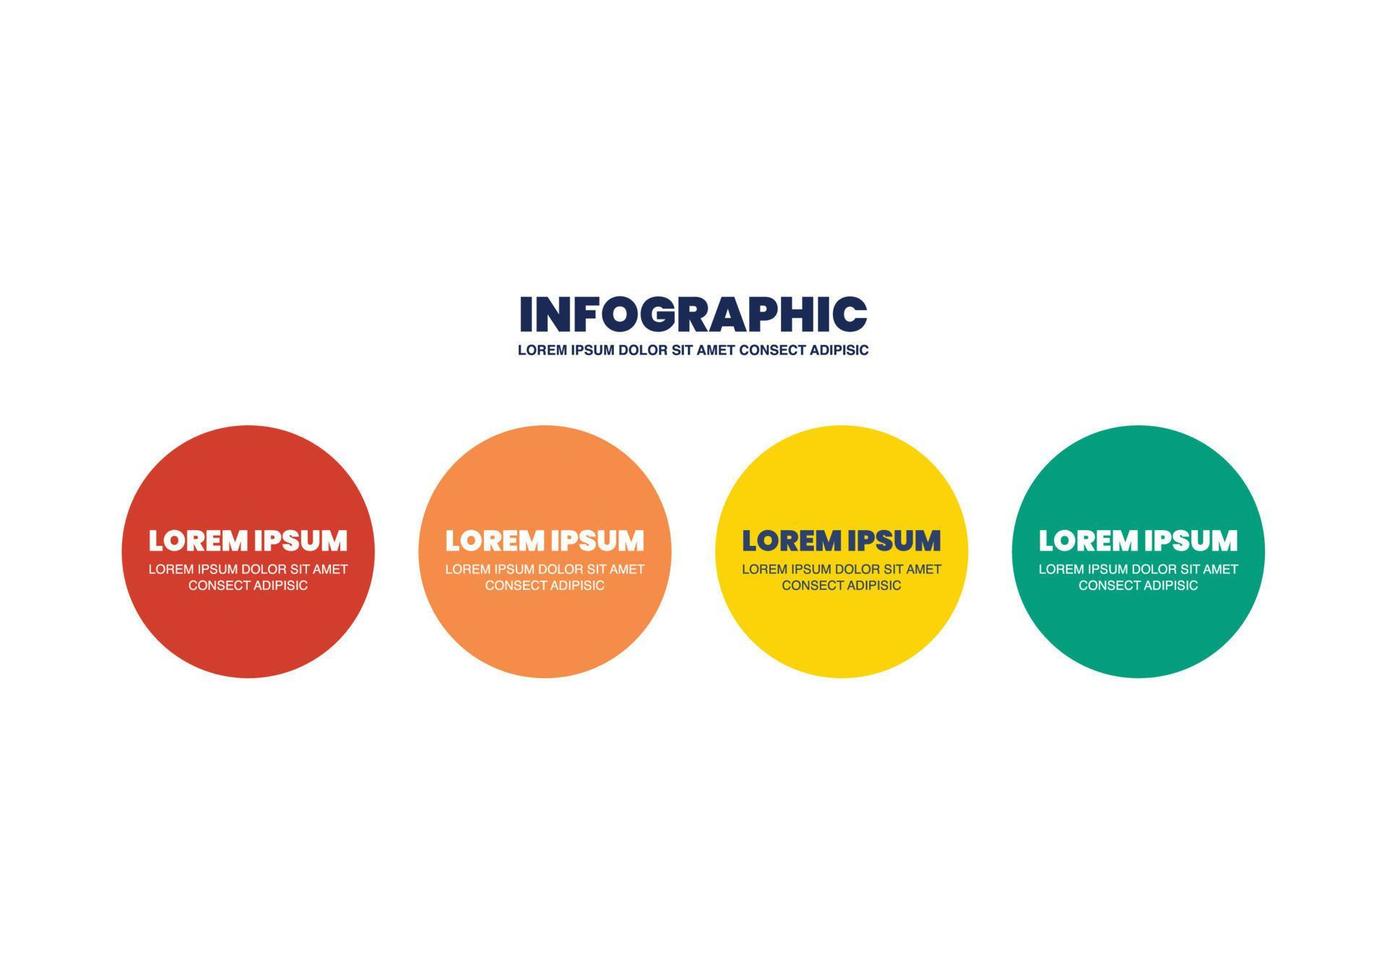 vier stappen cirkel infographic ontwerp vector